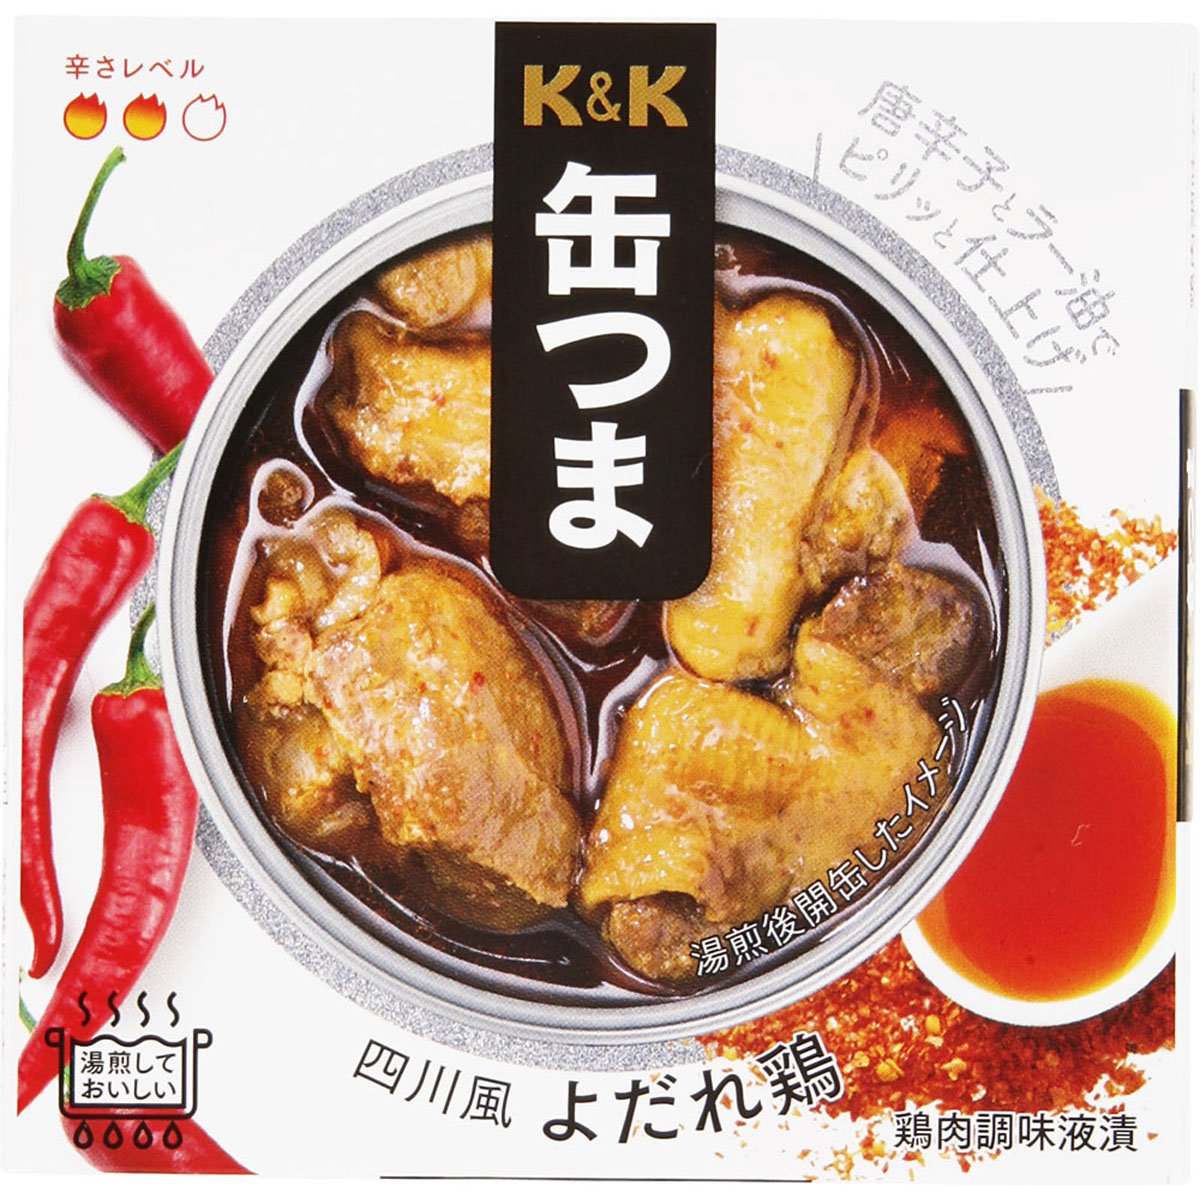 K & K CAN TSUMA SICHUAN 스타일의 침을 흘리는 닭